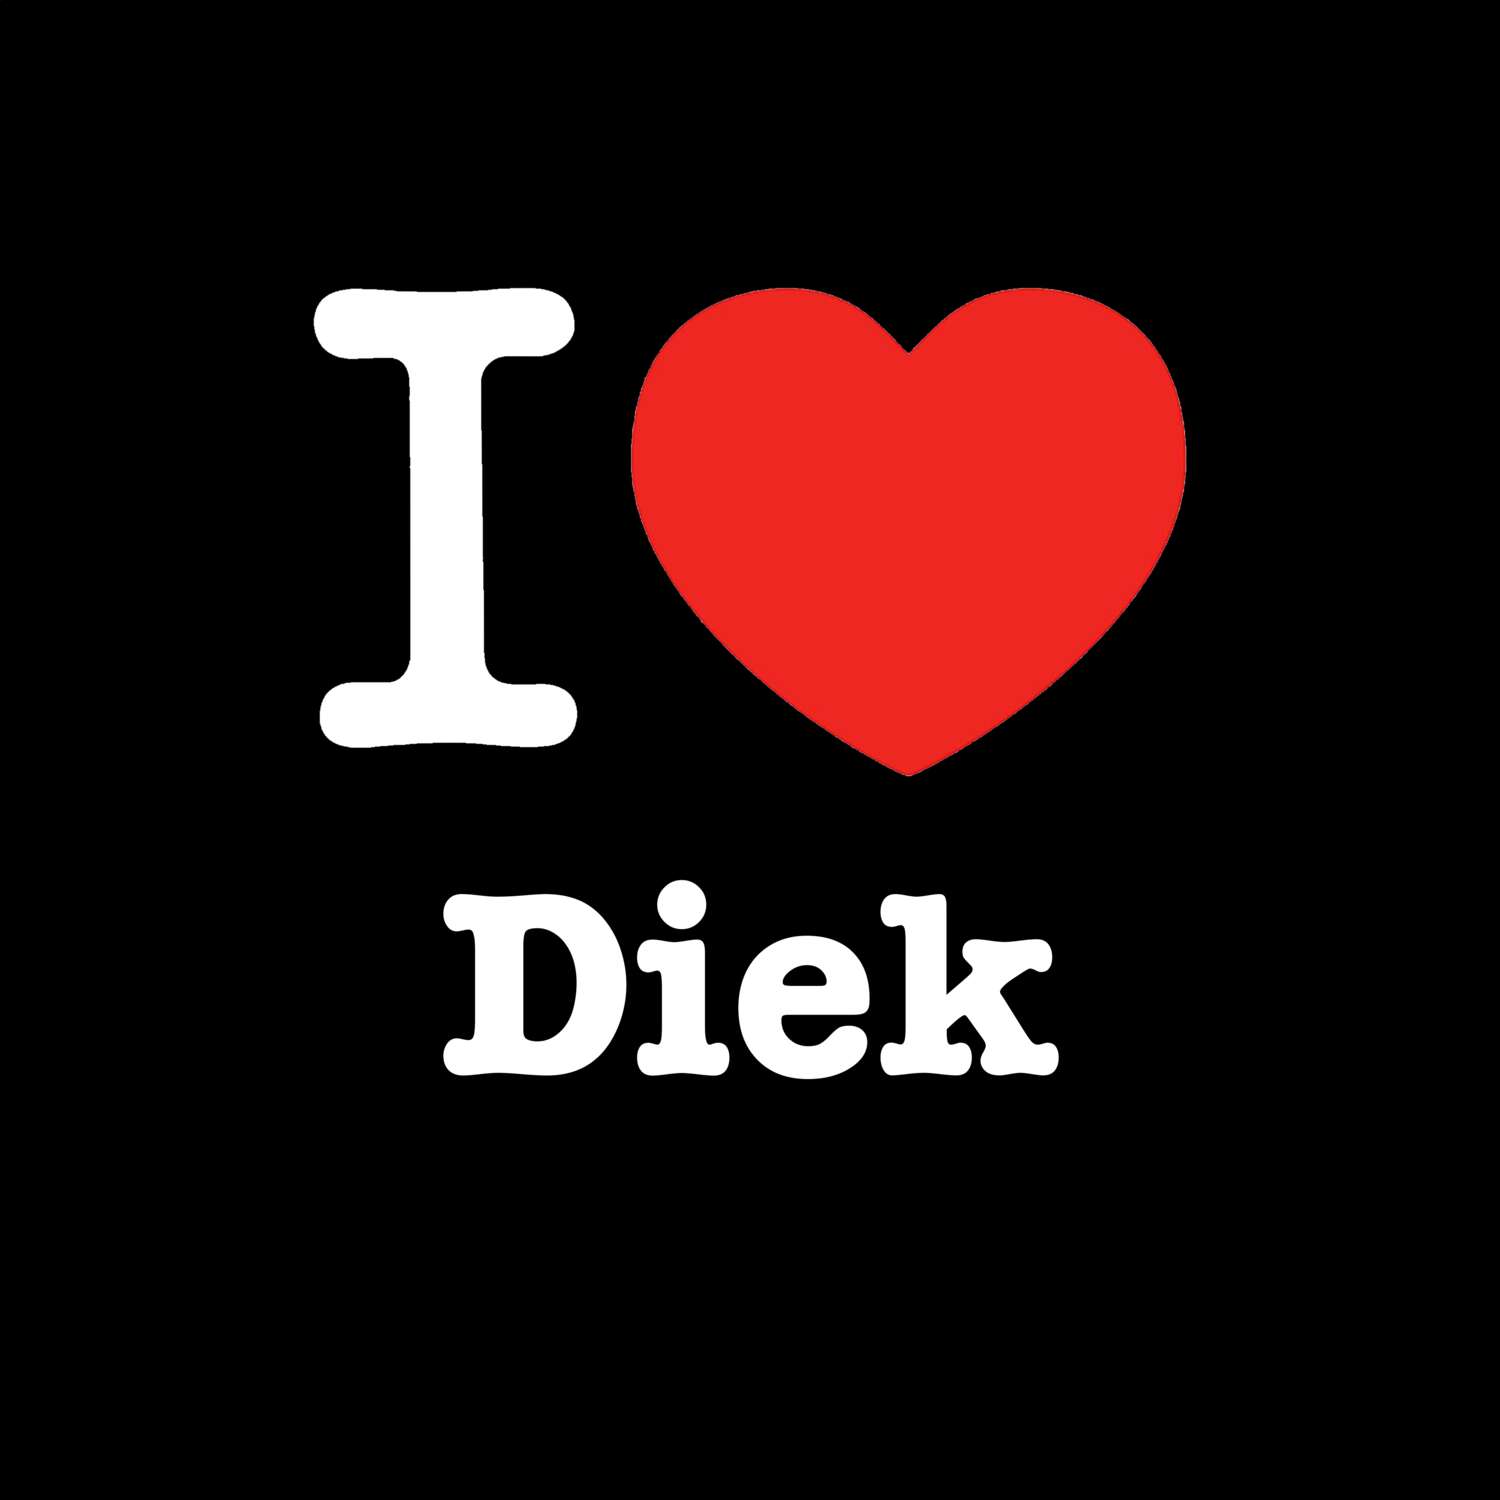 Diek T-Shirt »I love«